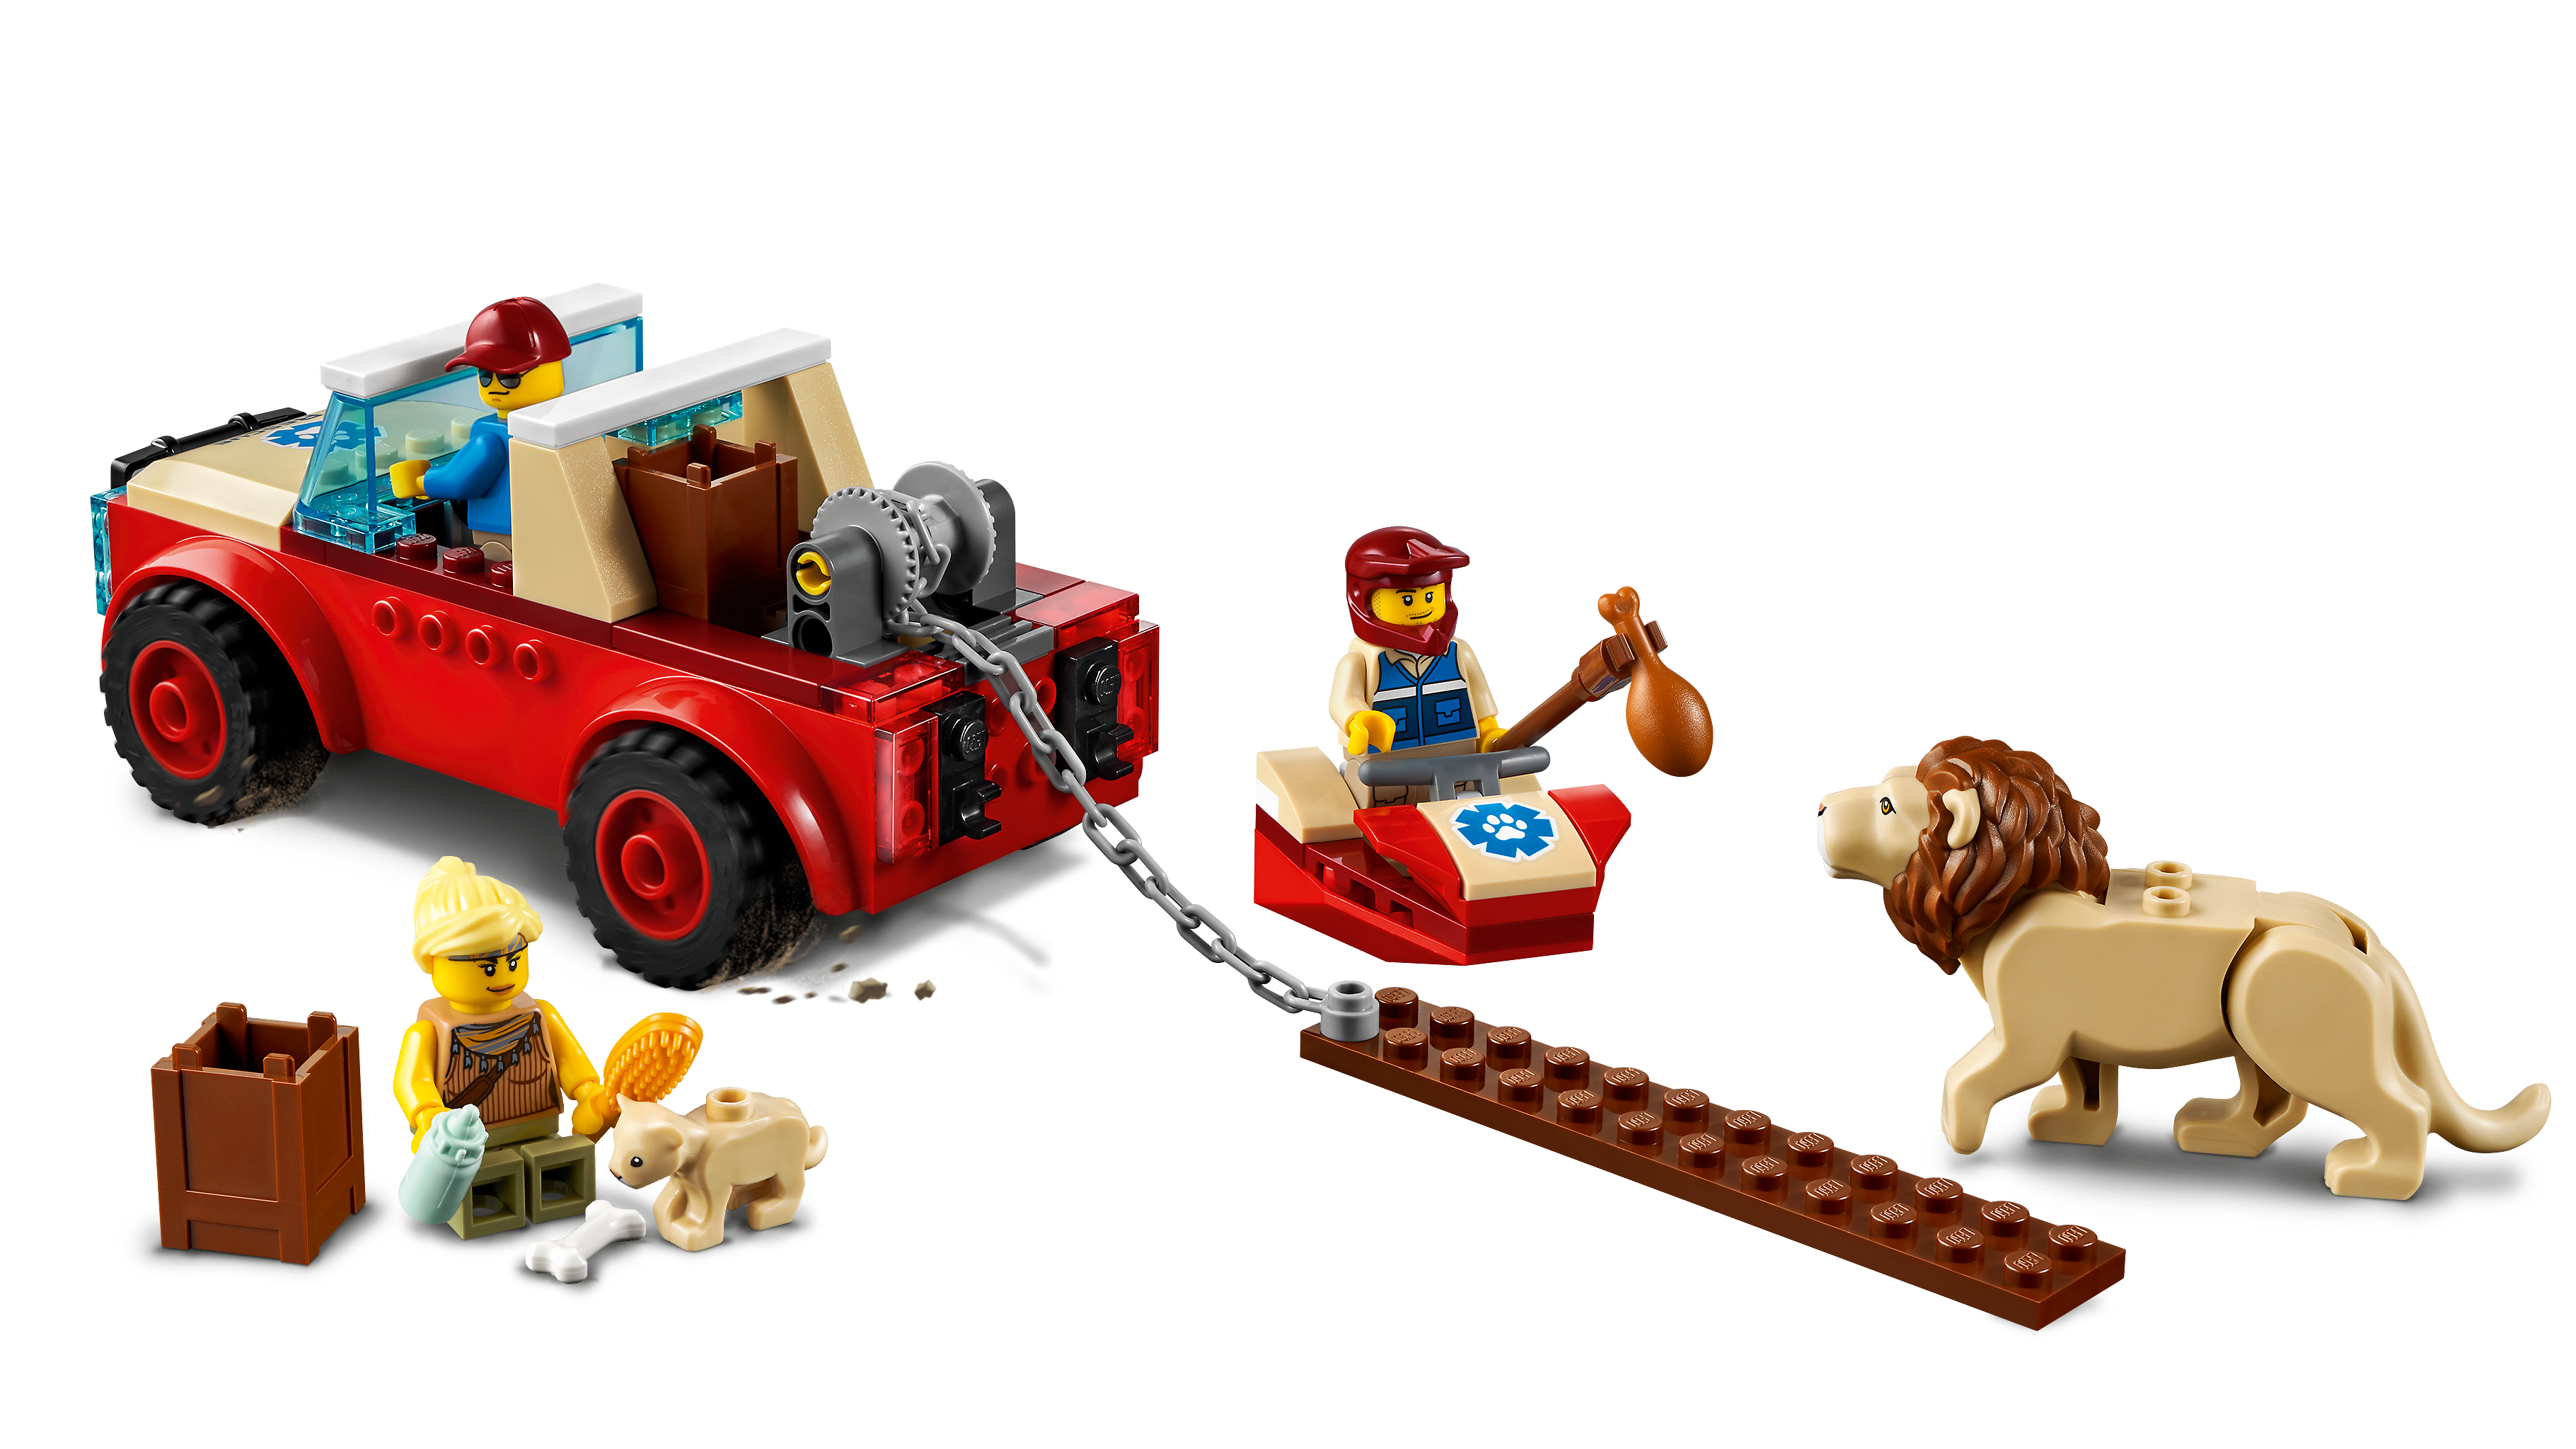 Tierrettungs-Geländewagen 60301 | City | Offizieller LEGO® Shop DE